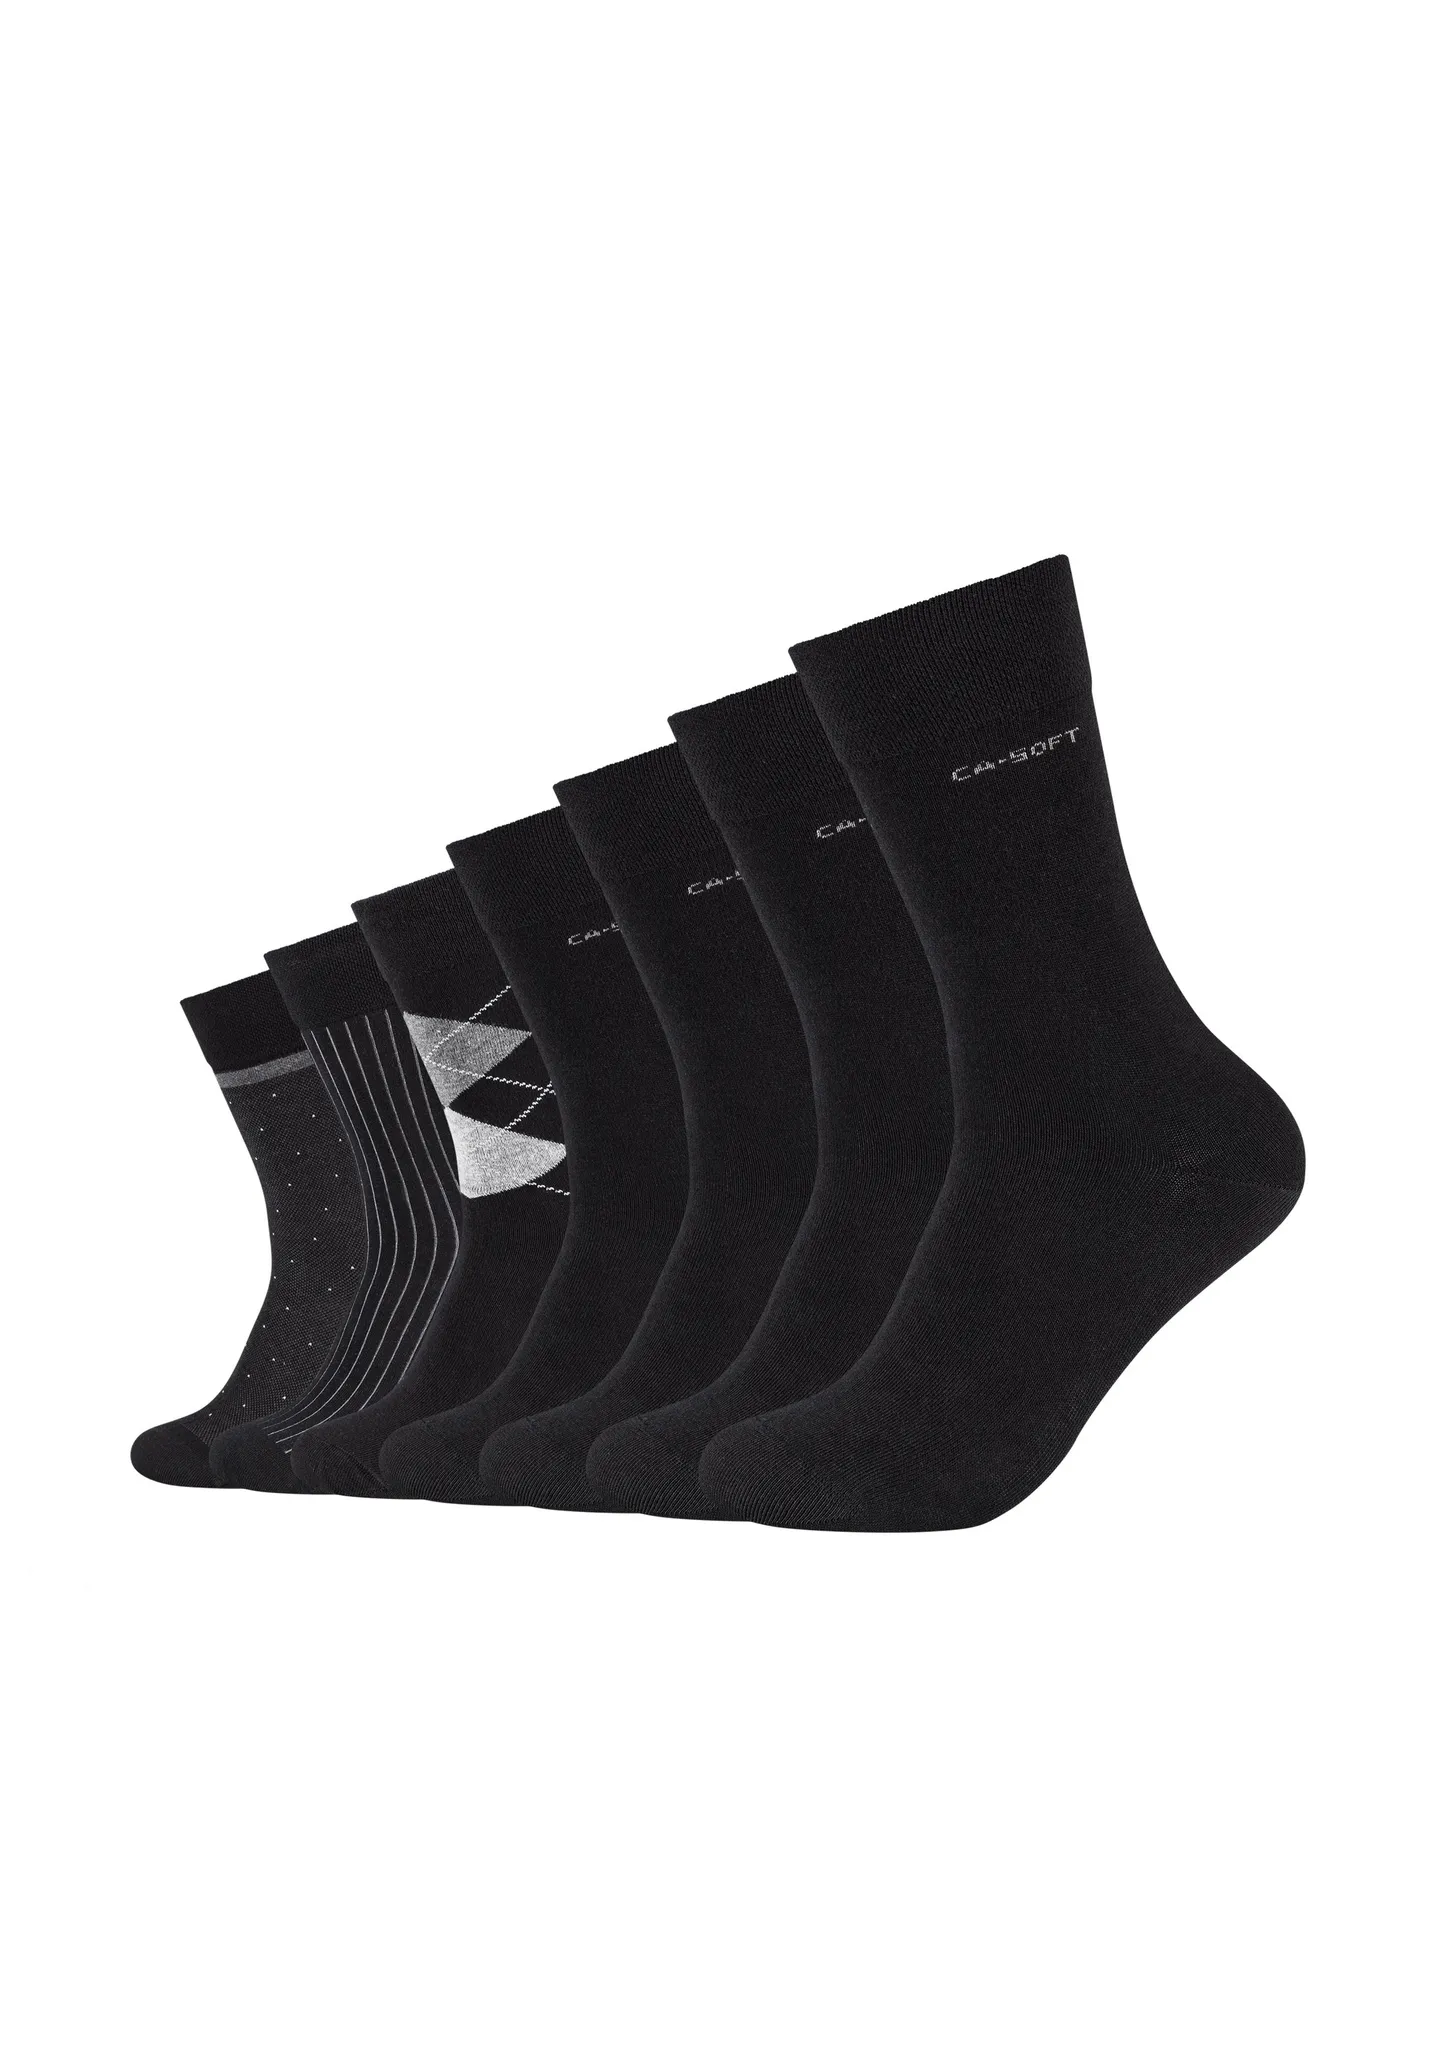 Camano weichem ca-soft mit 7er-Pack Socken